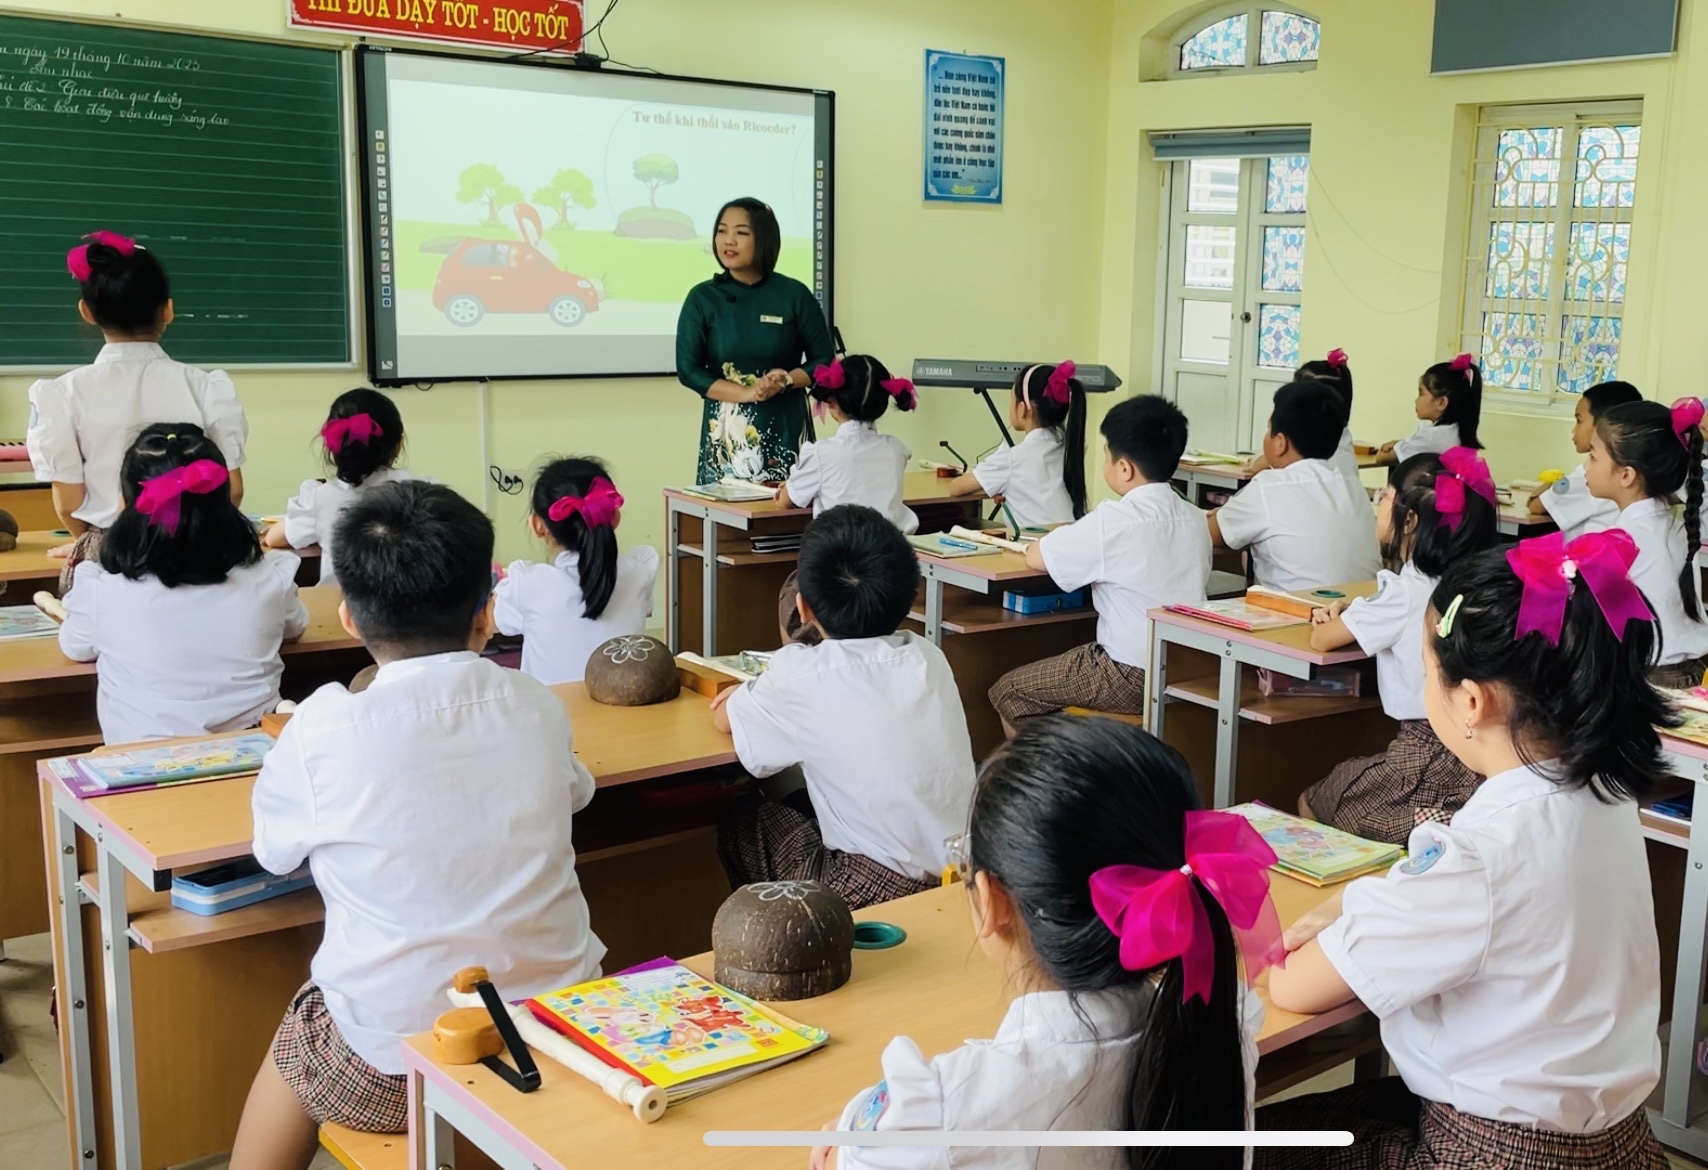 Thăng hạng giáo viên: Kiến nghị Hà Nội thêm 1 đợt xét hồ sơ bổ sung cho giáo viên bị "loại oan"- Ảnh 1.